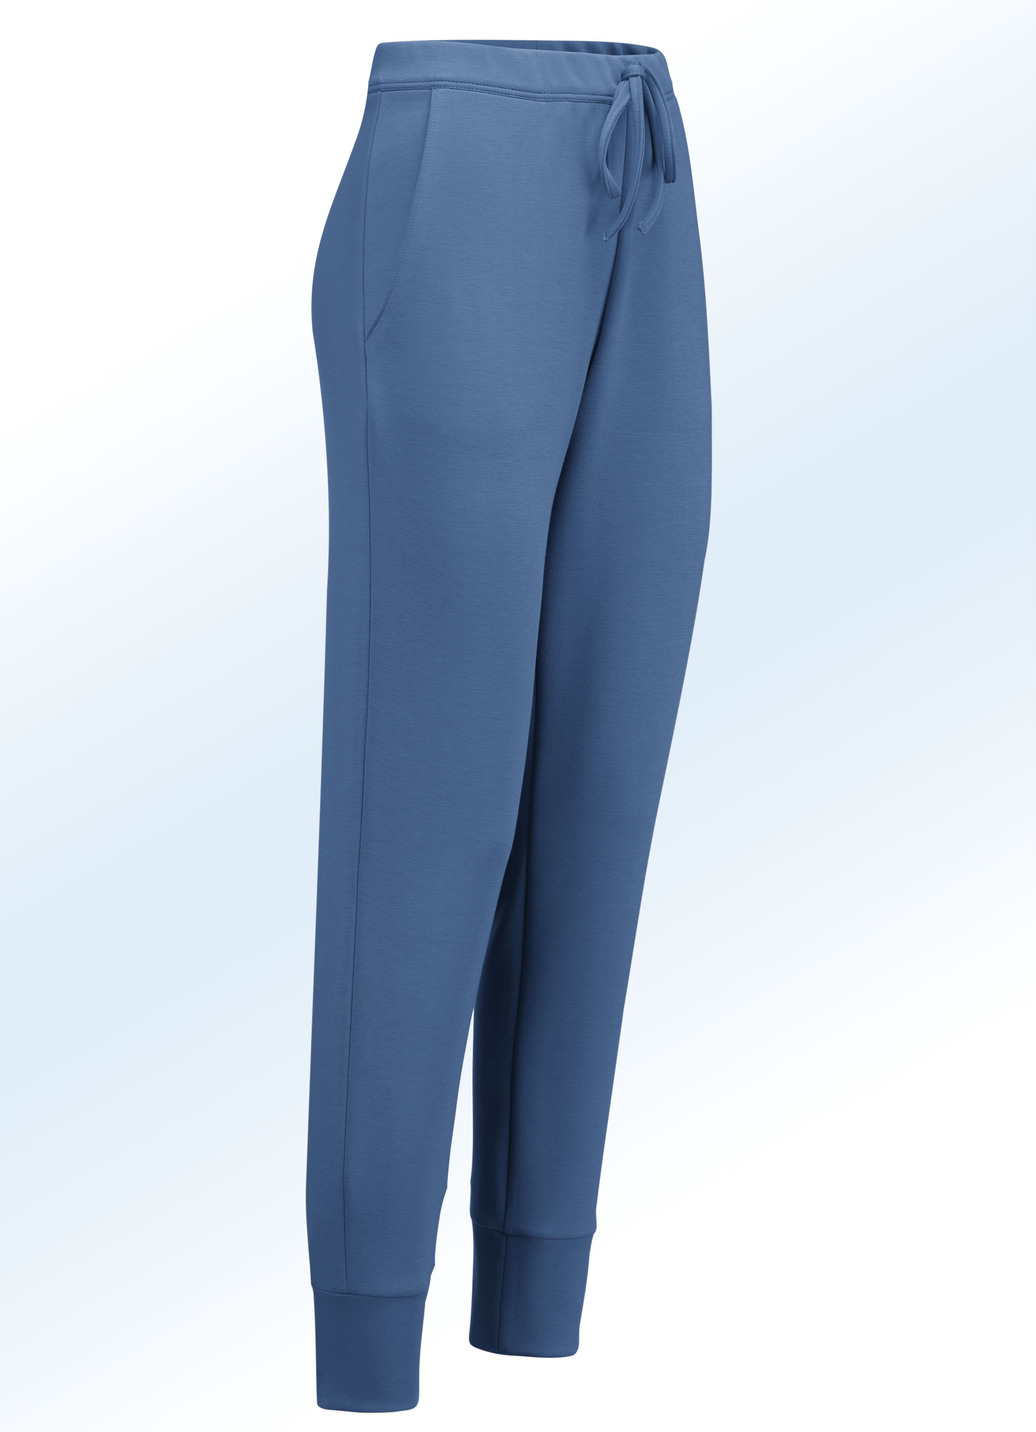 Jerseyhose im stadttauglichen Joggpant-Style, Jeansblau, Größe 40 von KLAUS MODELLE